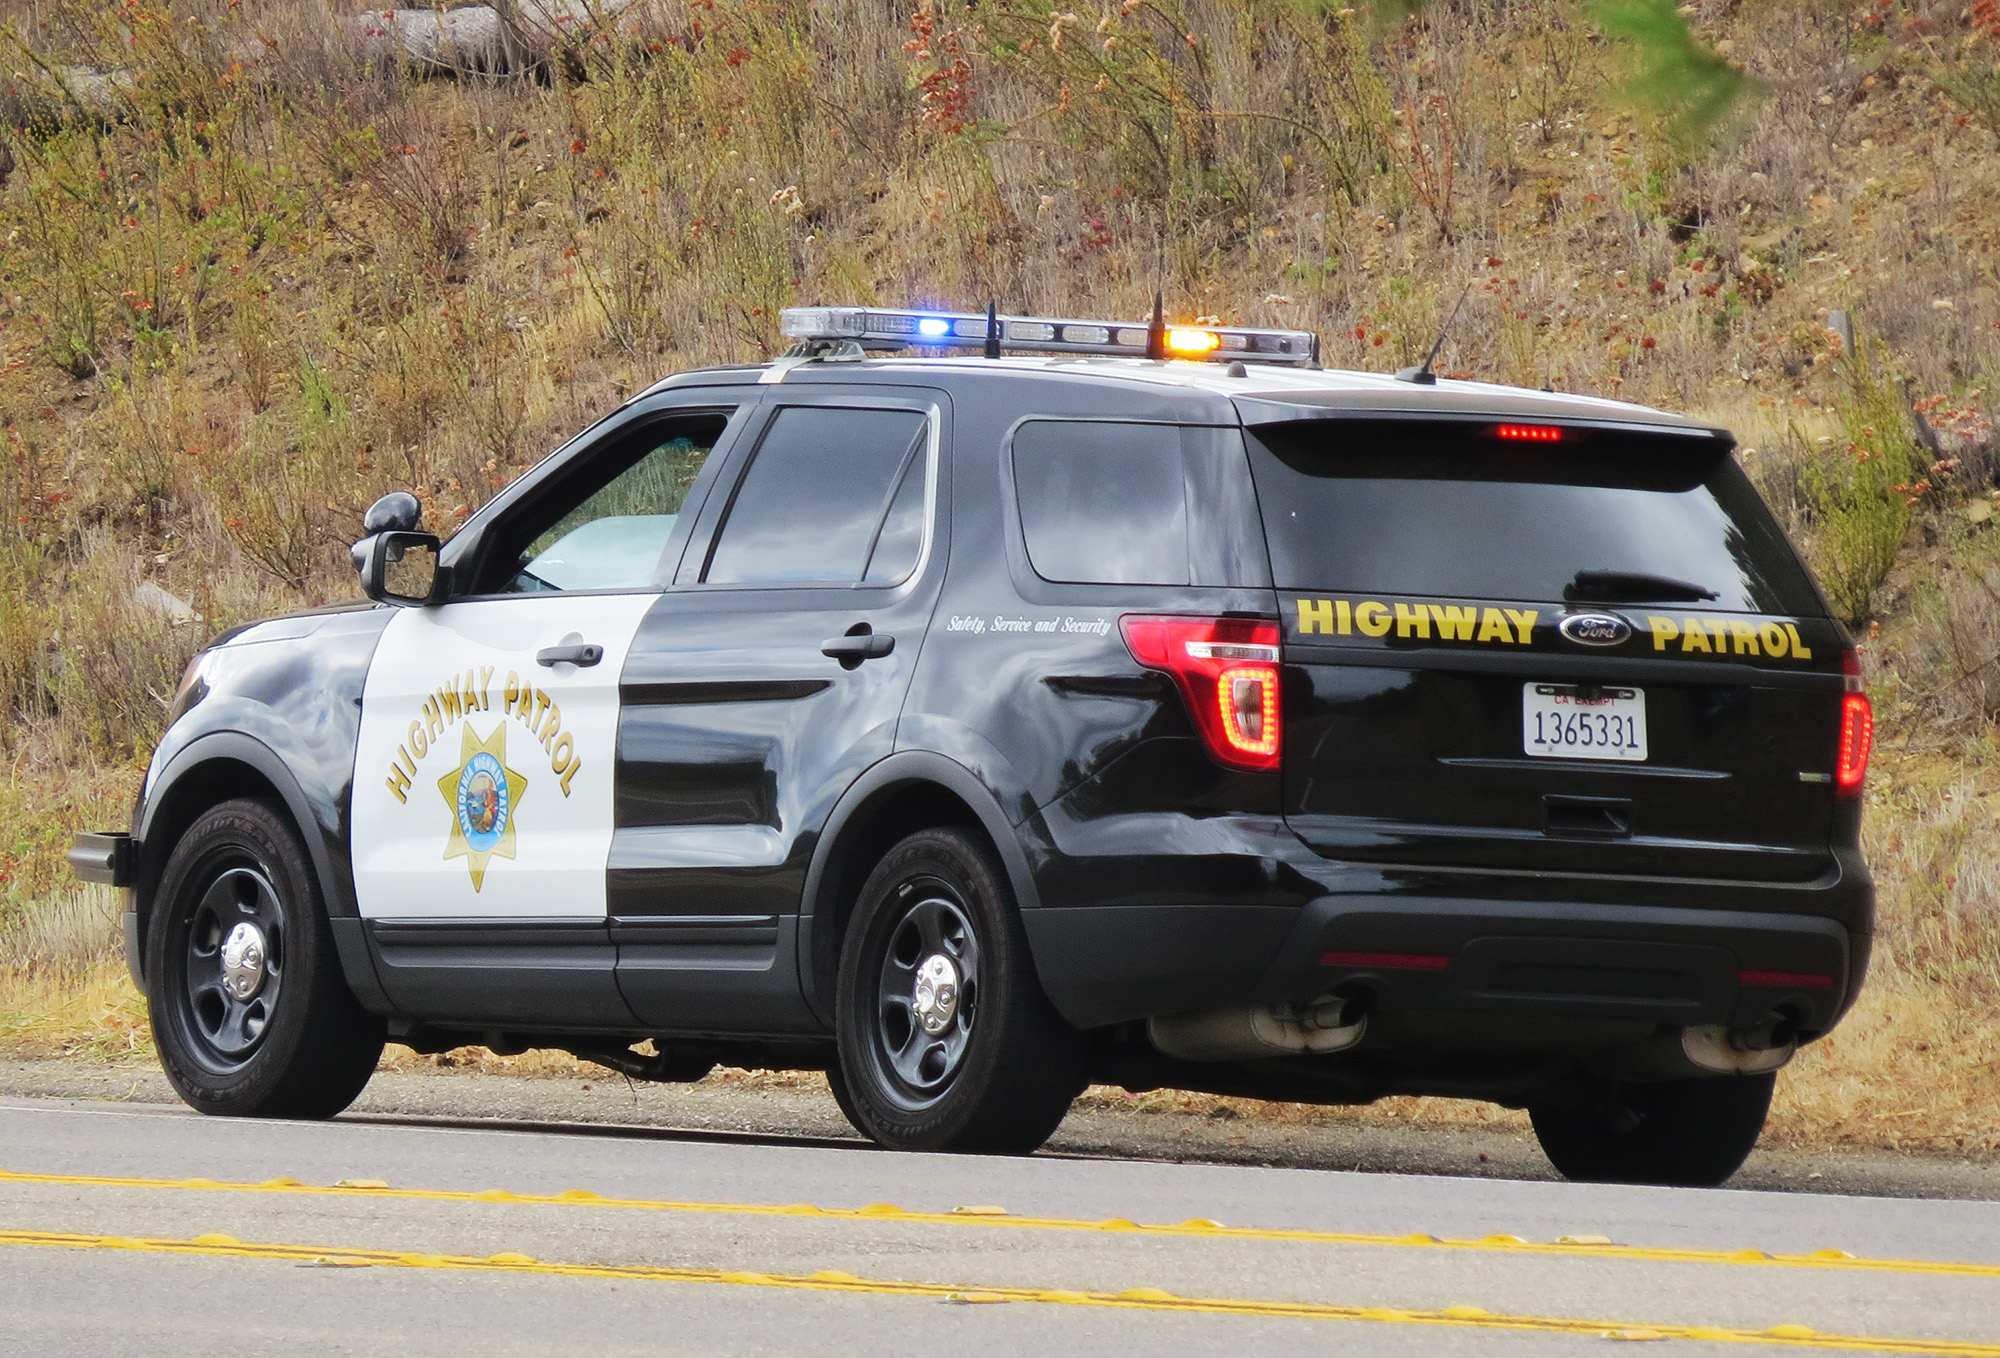 California Highway Patrol vehicle